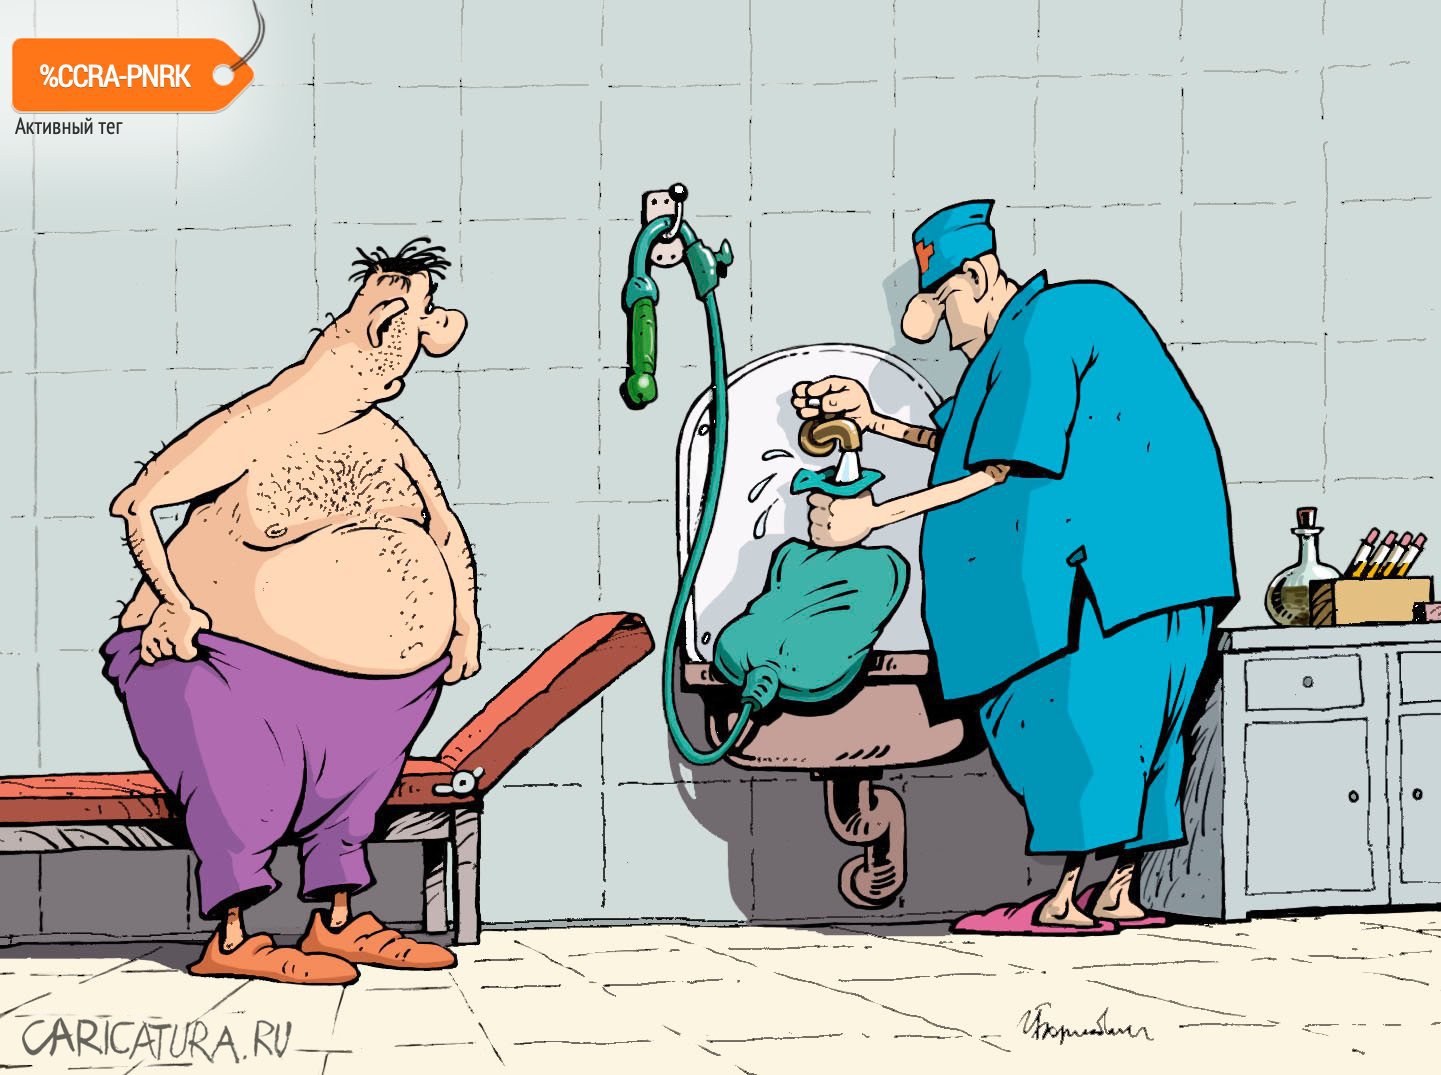 Карикатура "Процедура", Игорь Елистратов